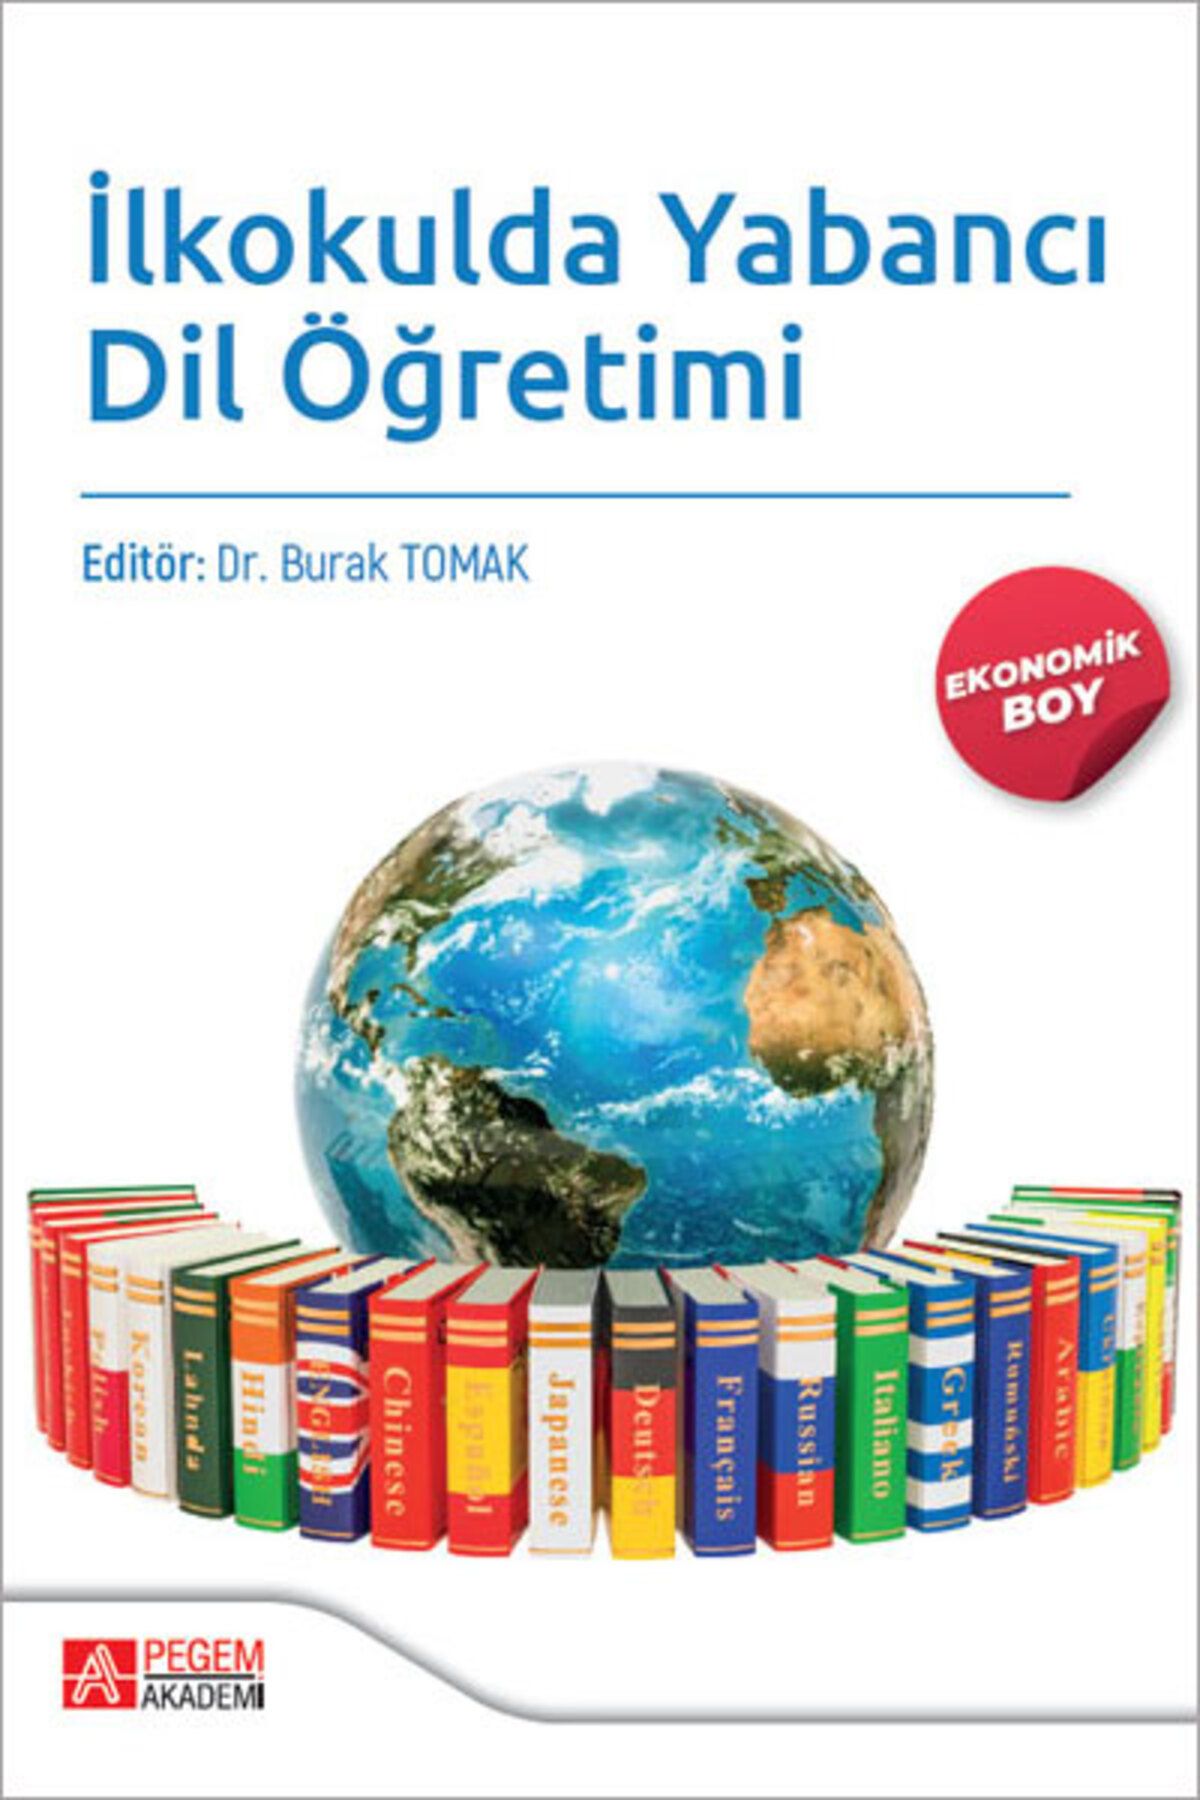 Pegem Akademi Yayıncılık Ilkokulda Yabancı Dil Öğretimi (ekonomik Boy)